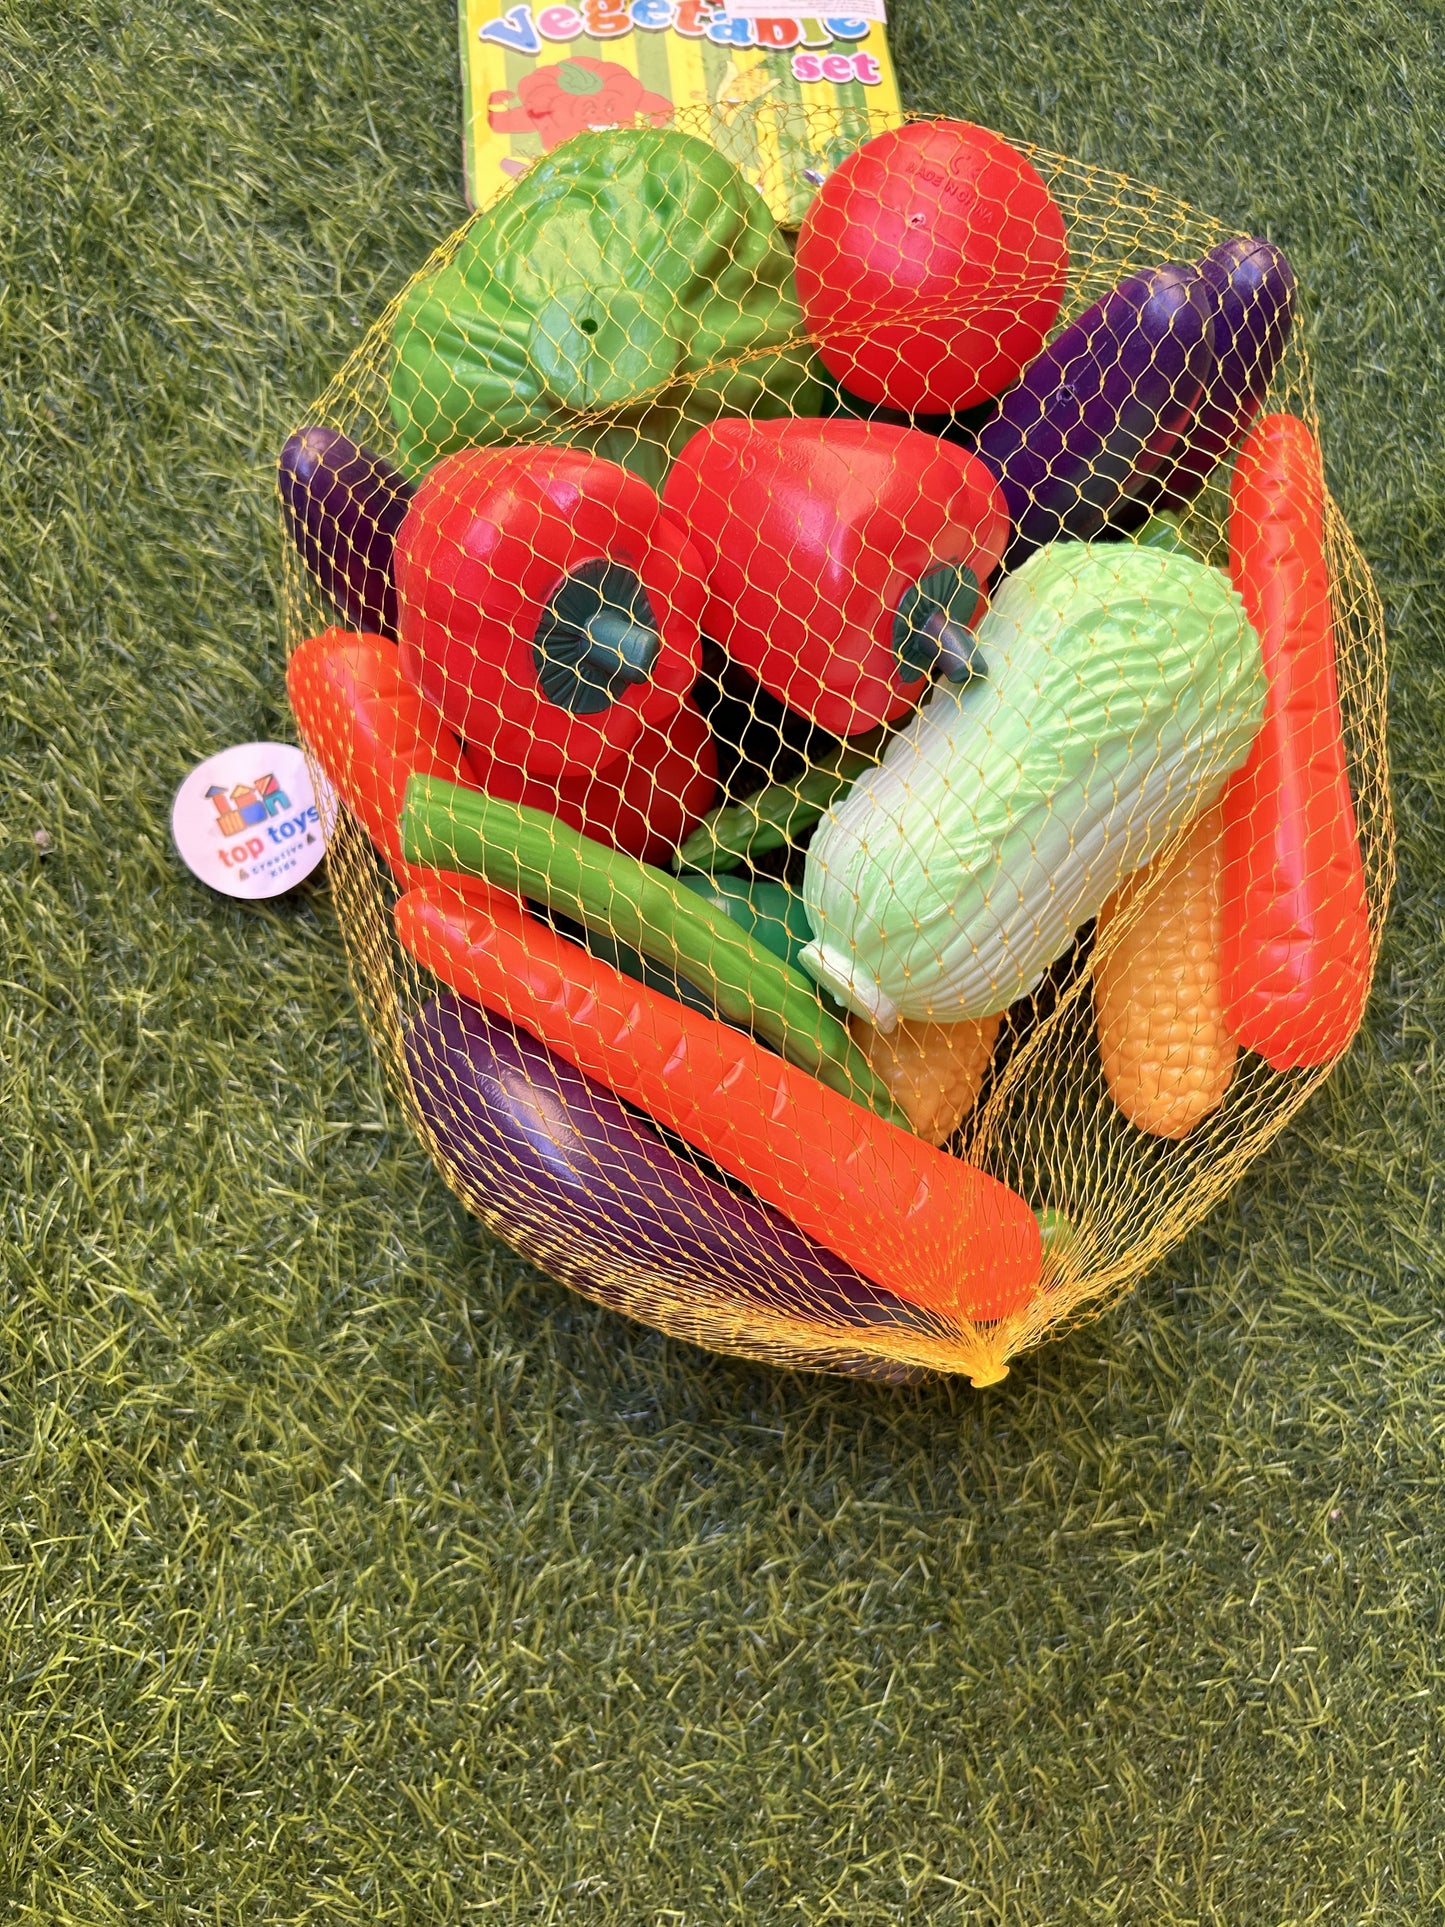 Fruits & Vegetables Plastic Models